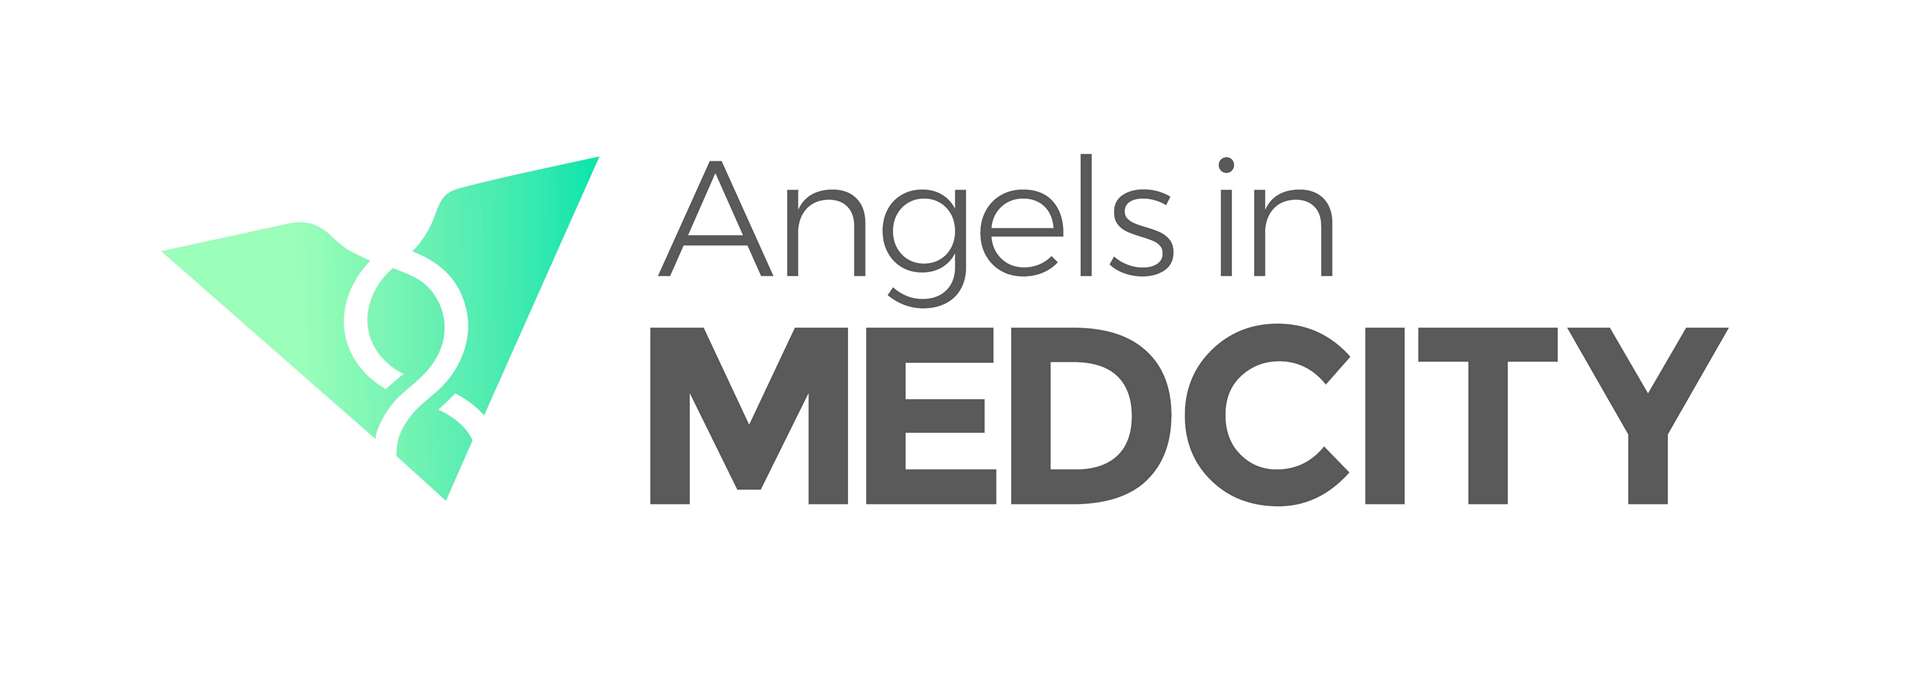 Angels in MedCity will help finance health start-ups (9000207)